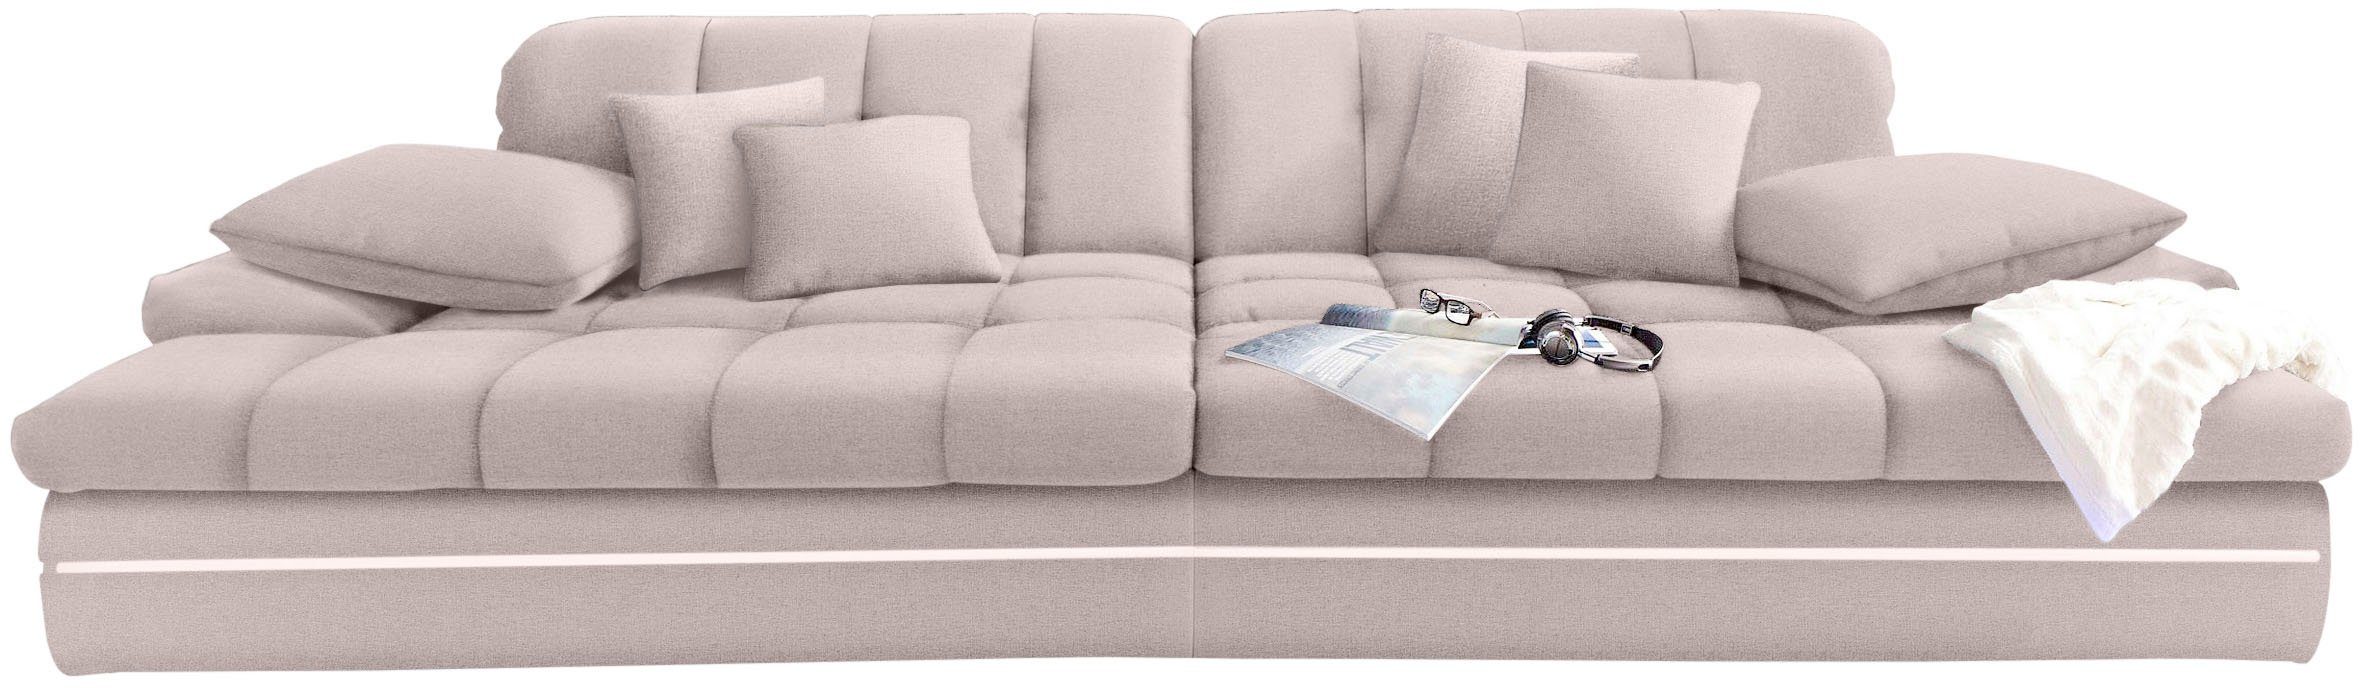 Mr. Couch Megabank Biarritz 2 naar keuze met koudschuim (140 kg belasting/zitting) en verstelbare hoofdsteun